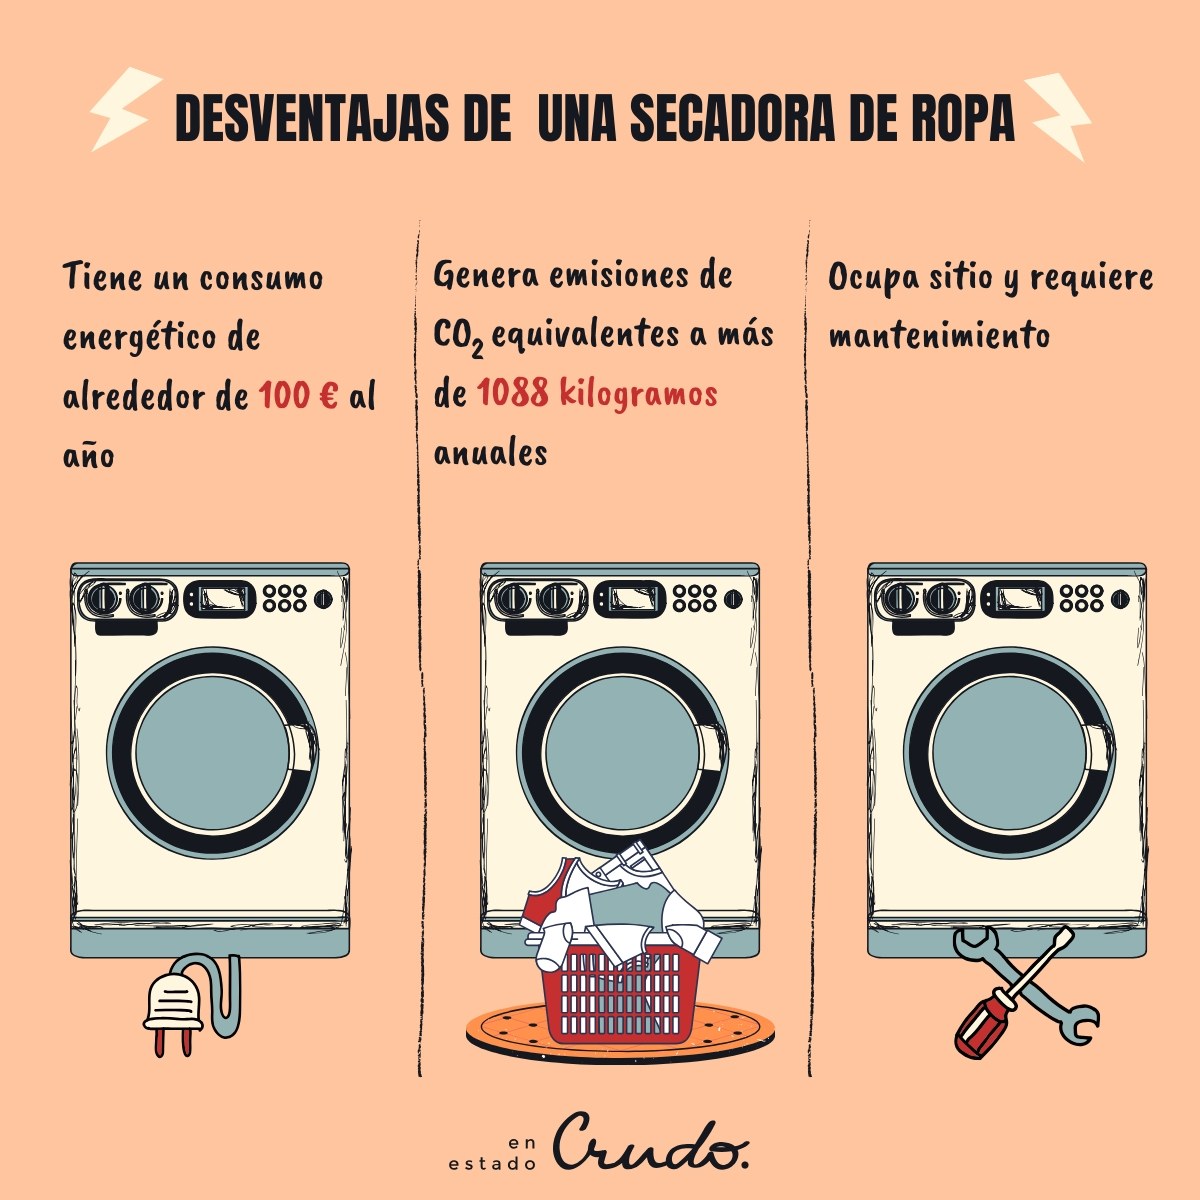 Total 98+ imagen que secadora de ropa es mejor - Viaterra.mx